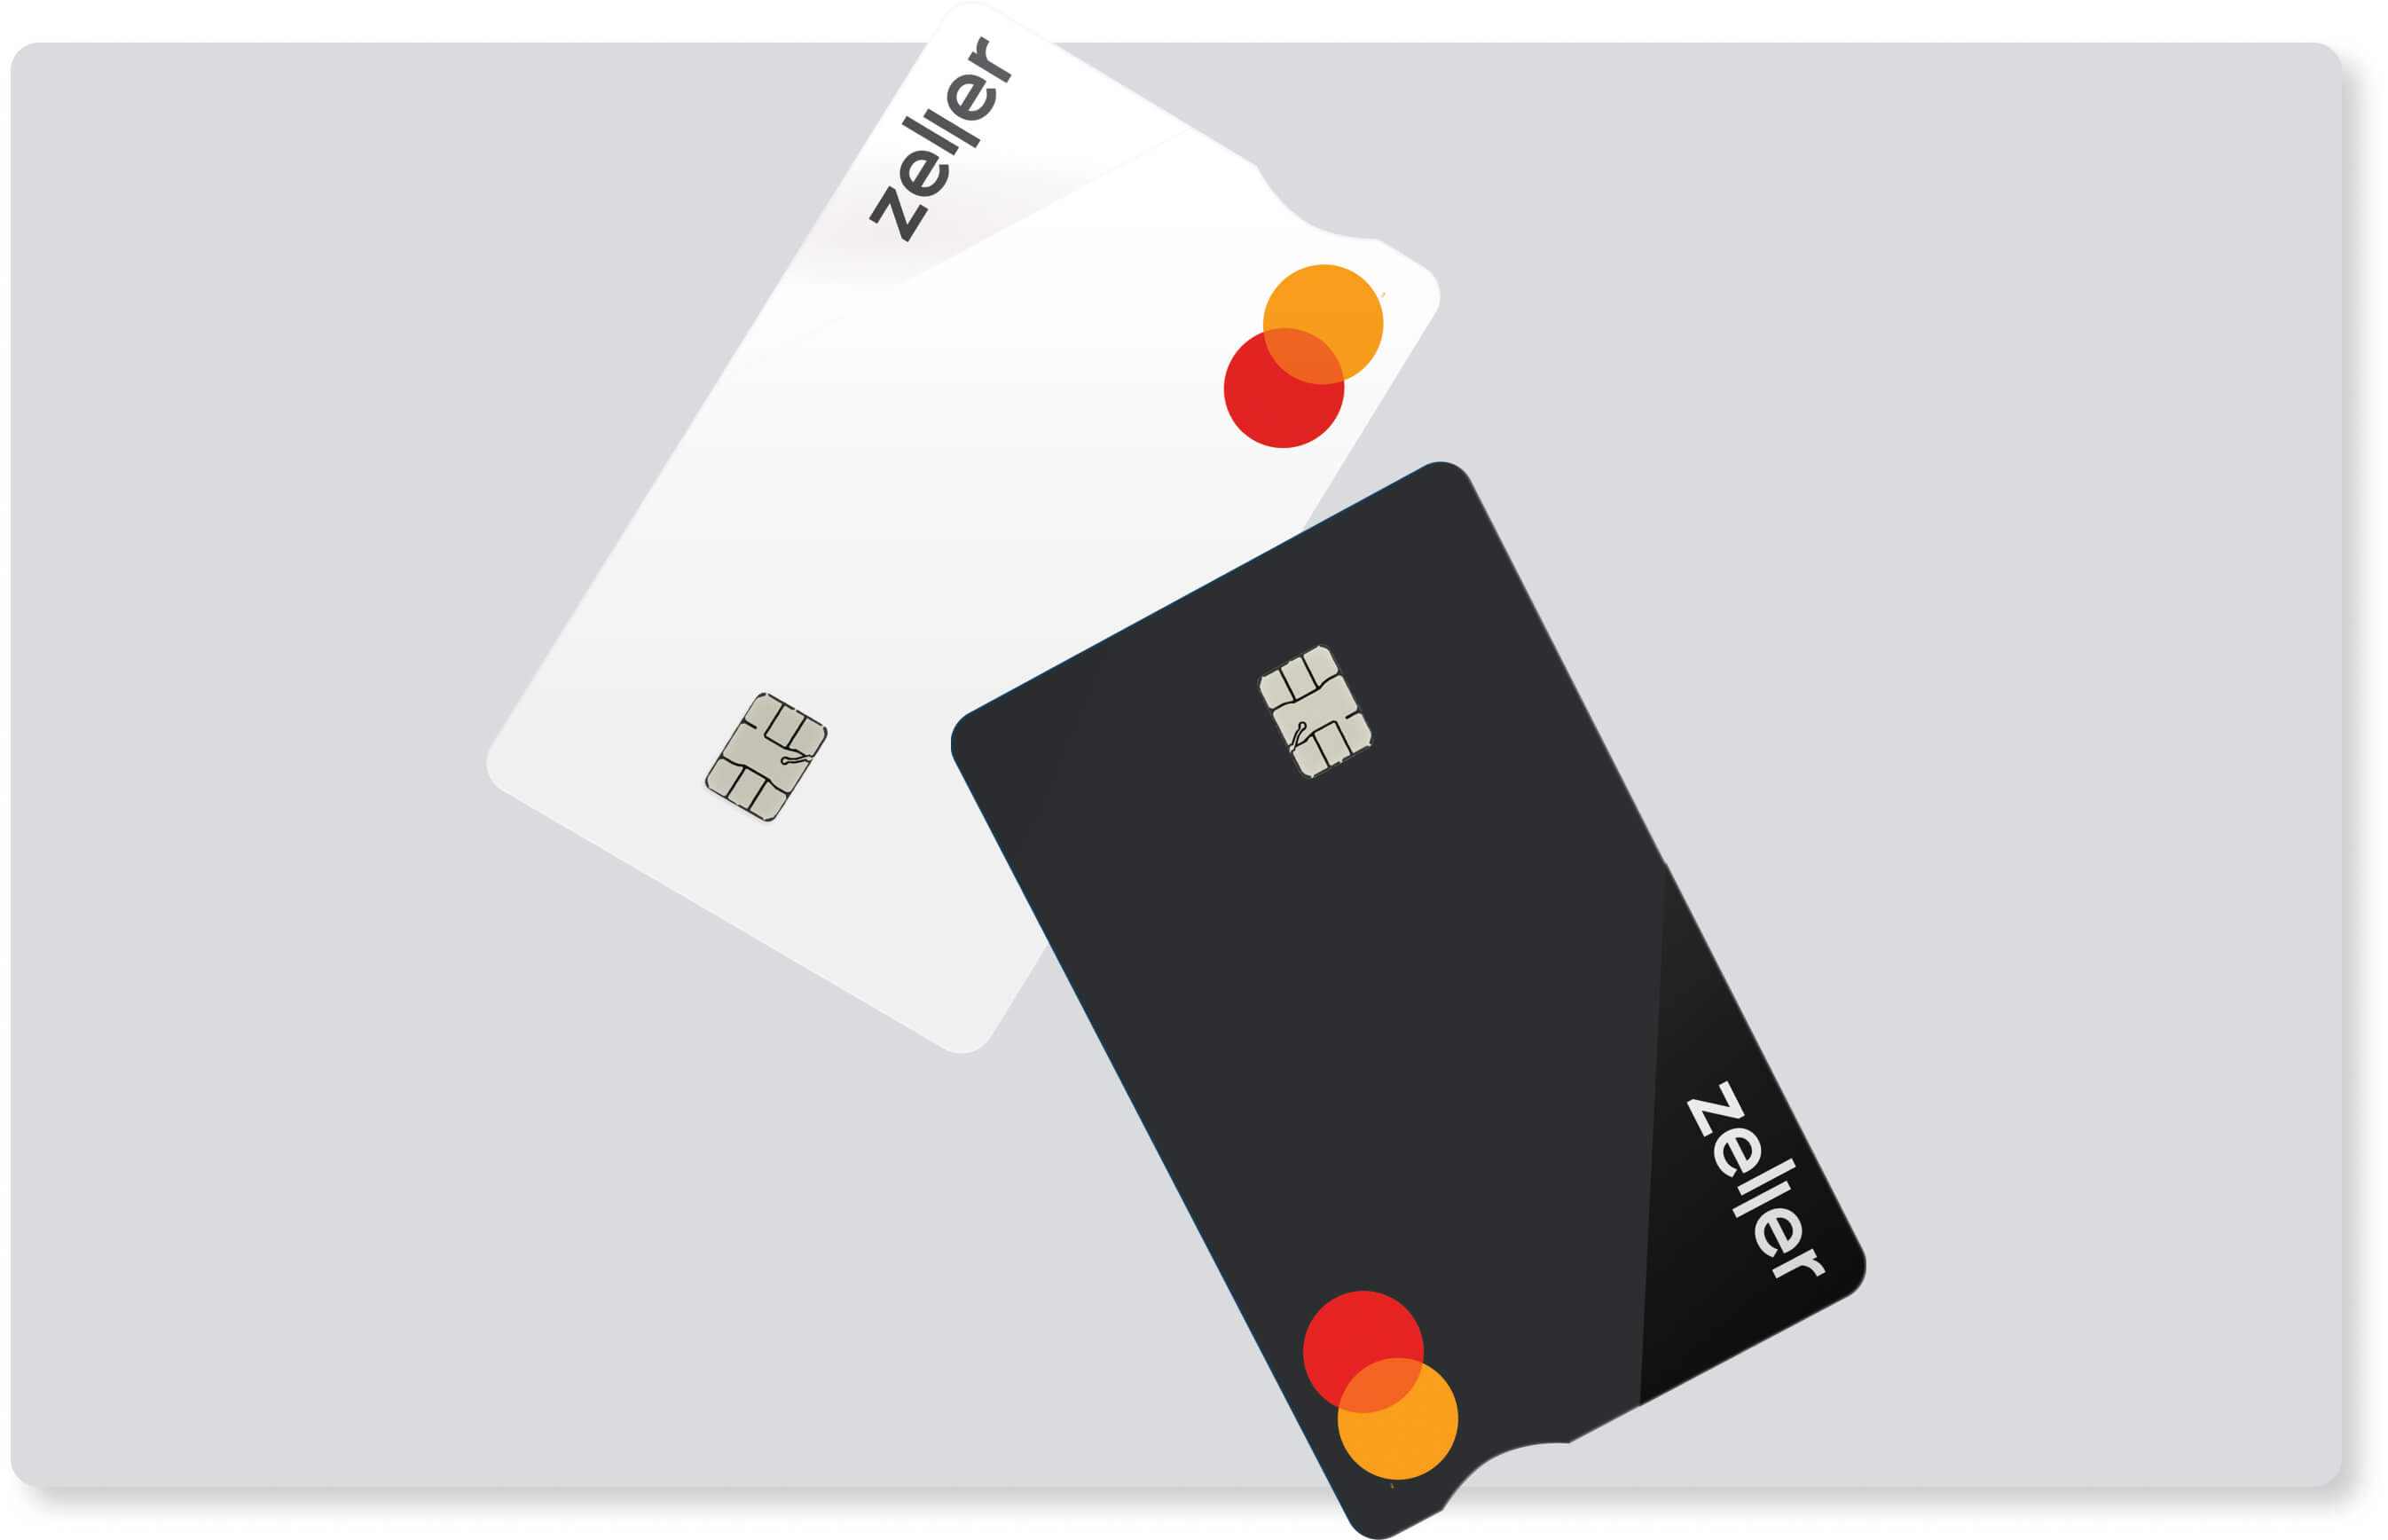 zeller-debit-cards-card-grey